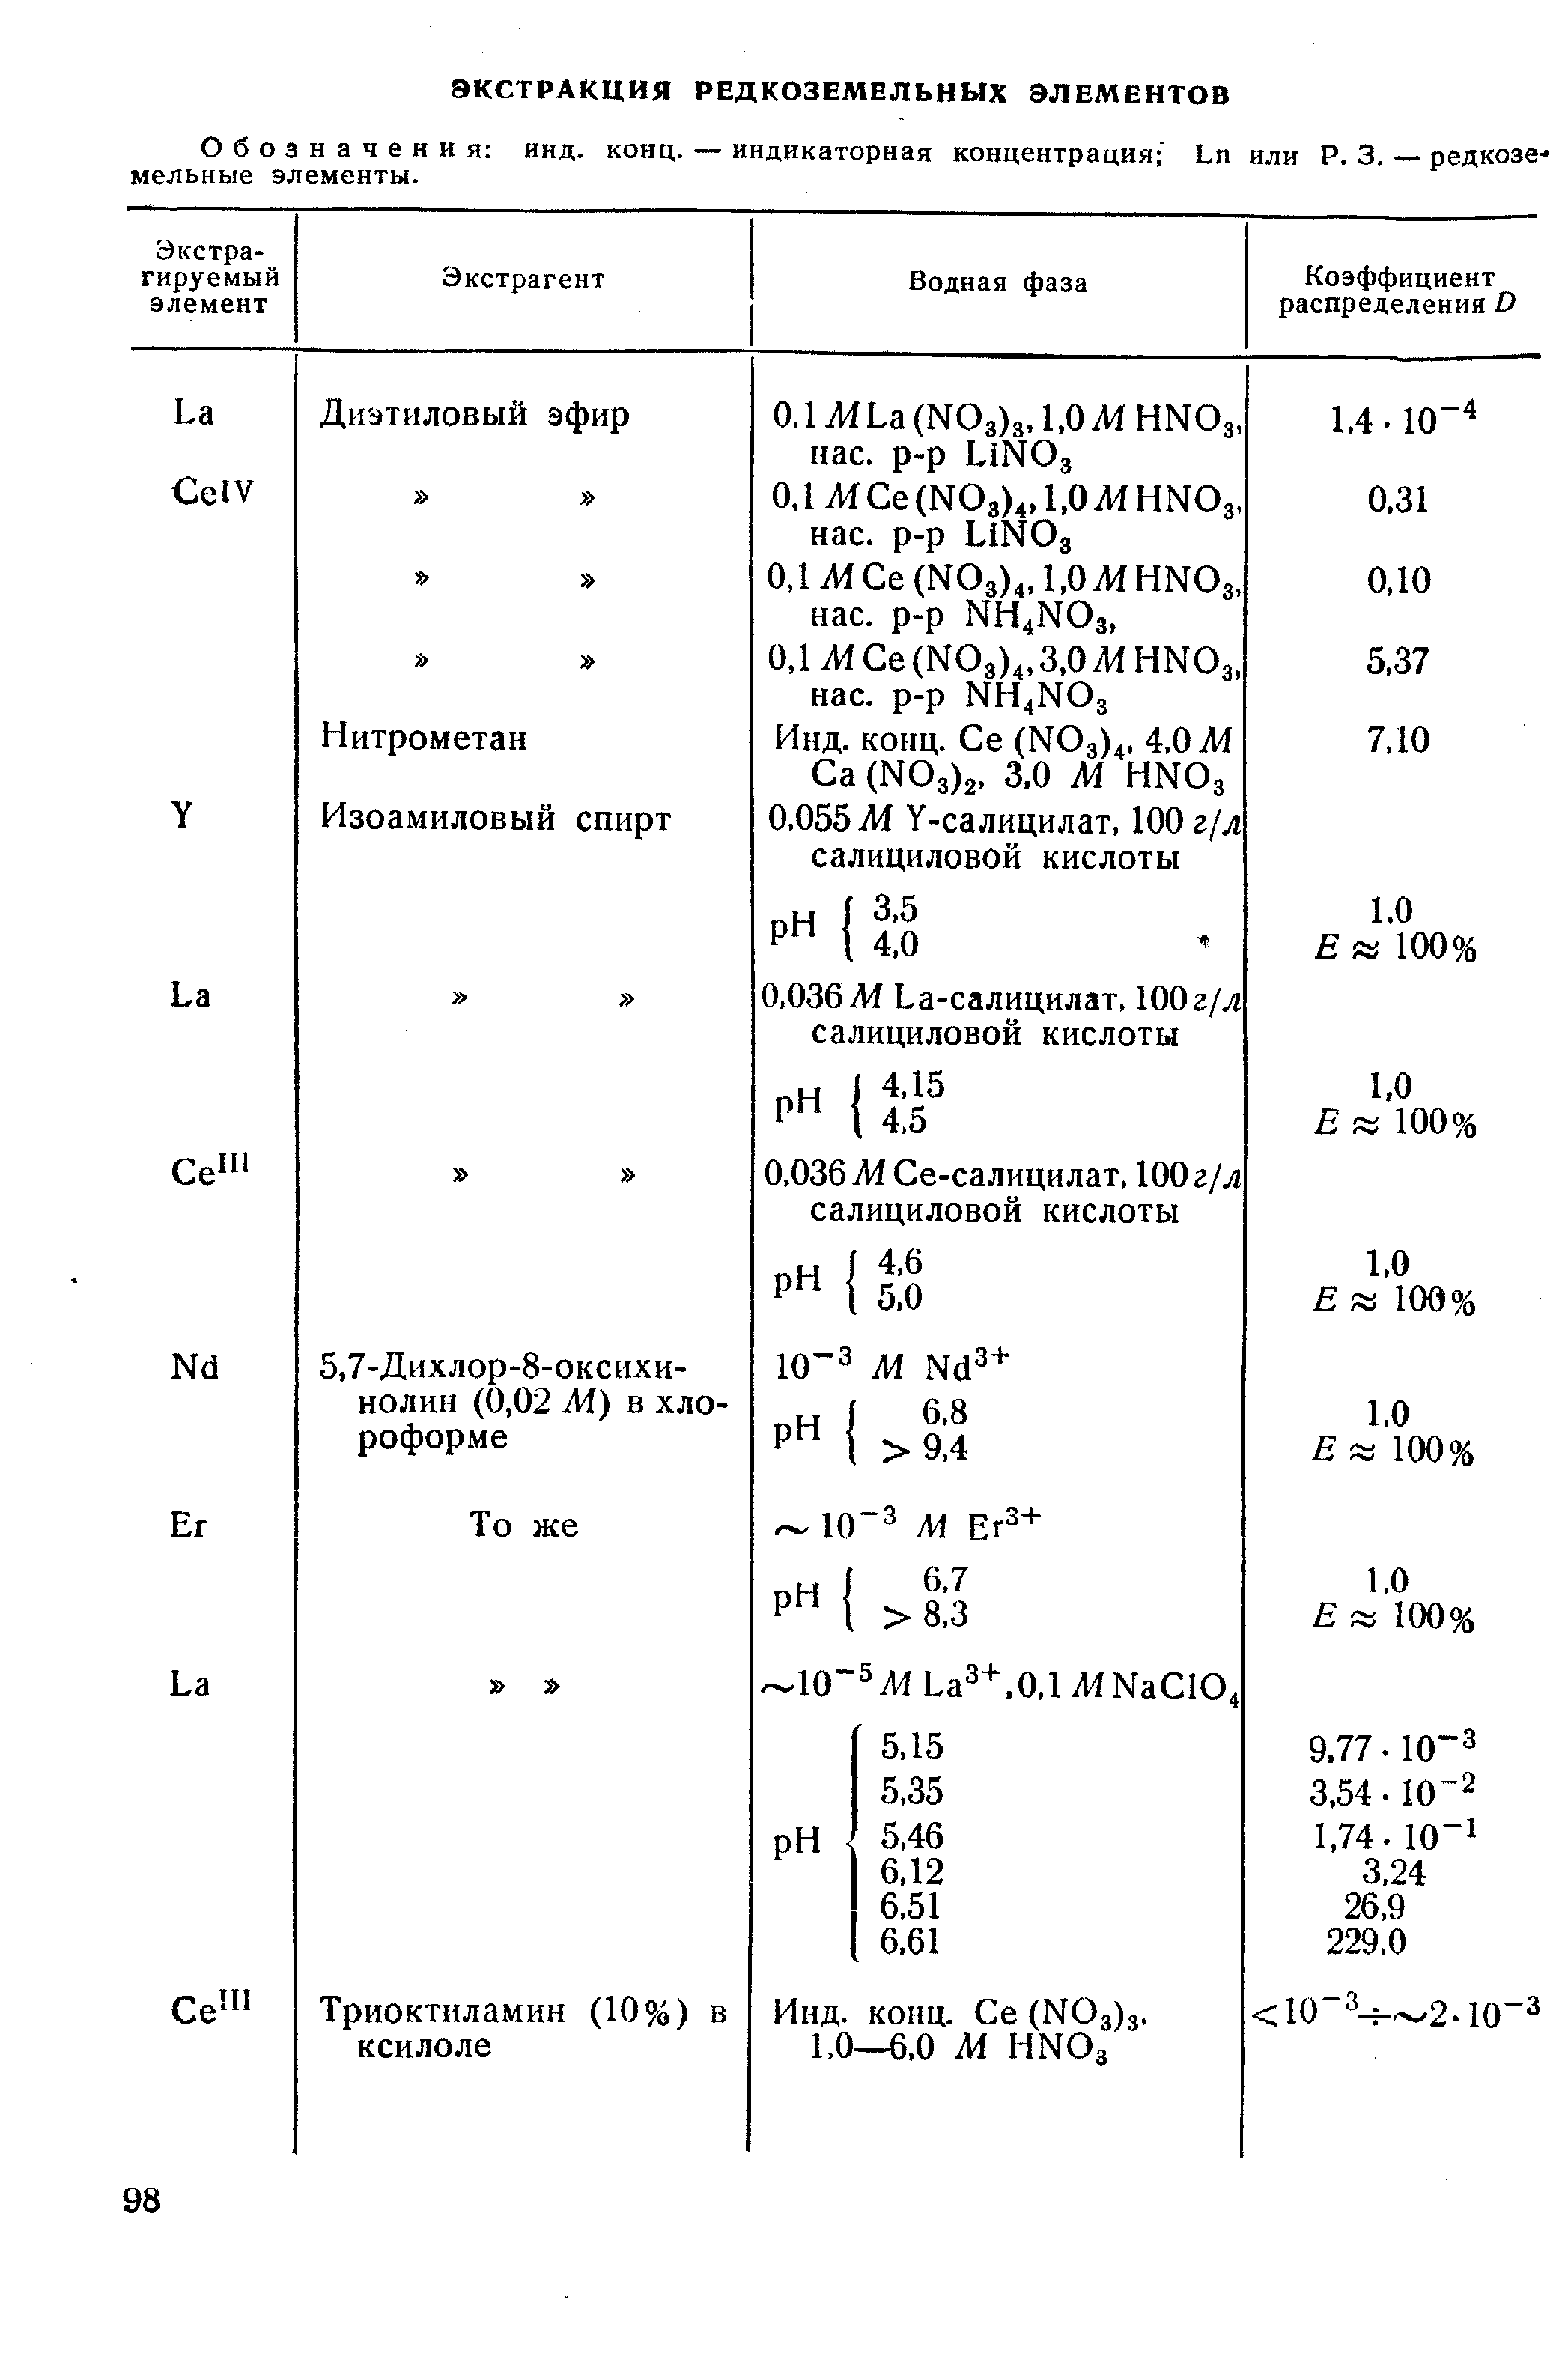 Обозначения инд. конц. — индикаторная концентрация Ln или Р. 3. — редкозе мельные элементы.